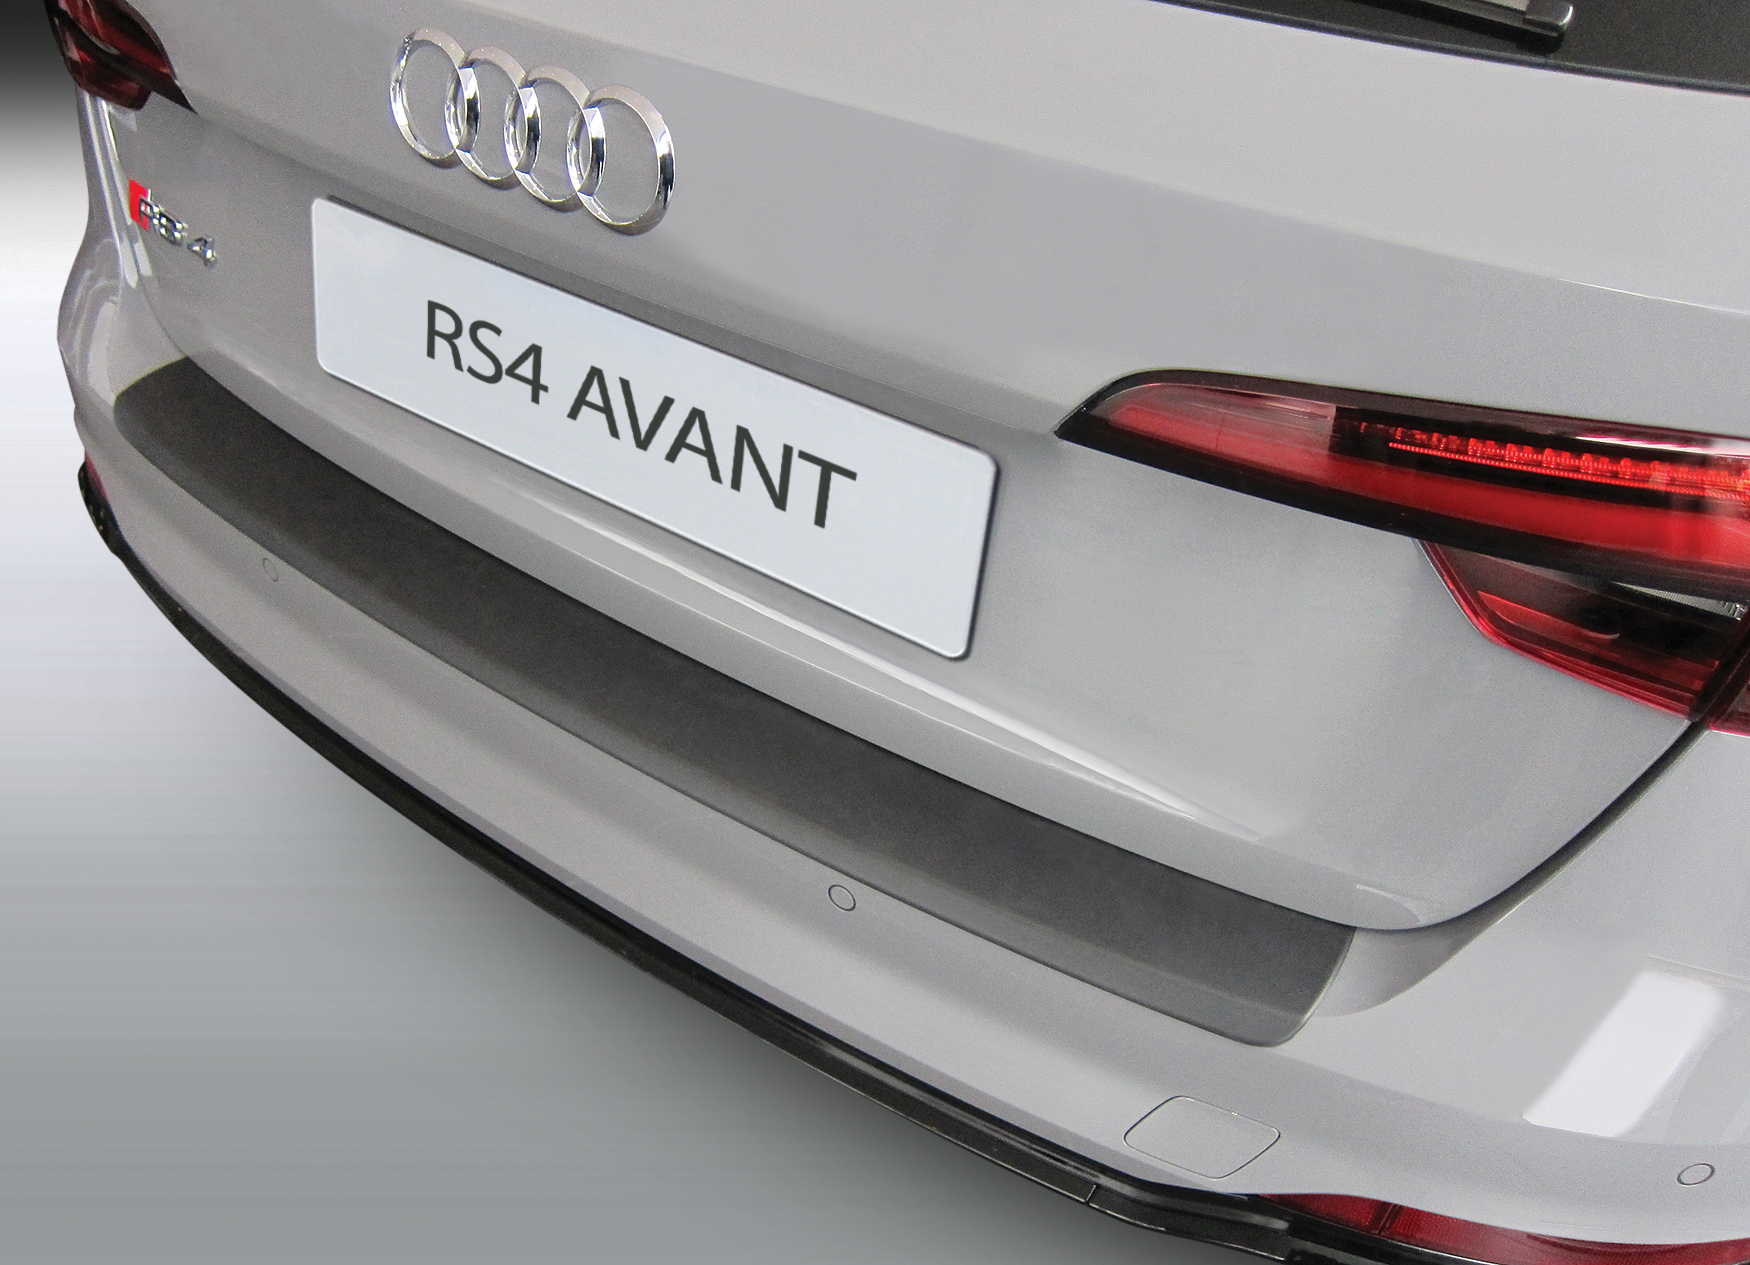 Ladekantenschutz für Audi RS4 - Schutz für die Ladekante Ihres Fahrzeuges